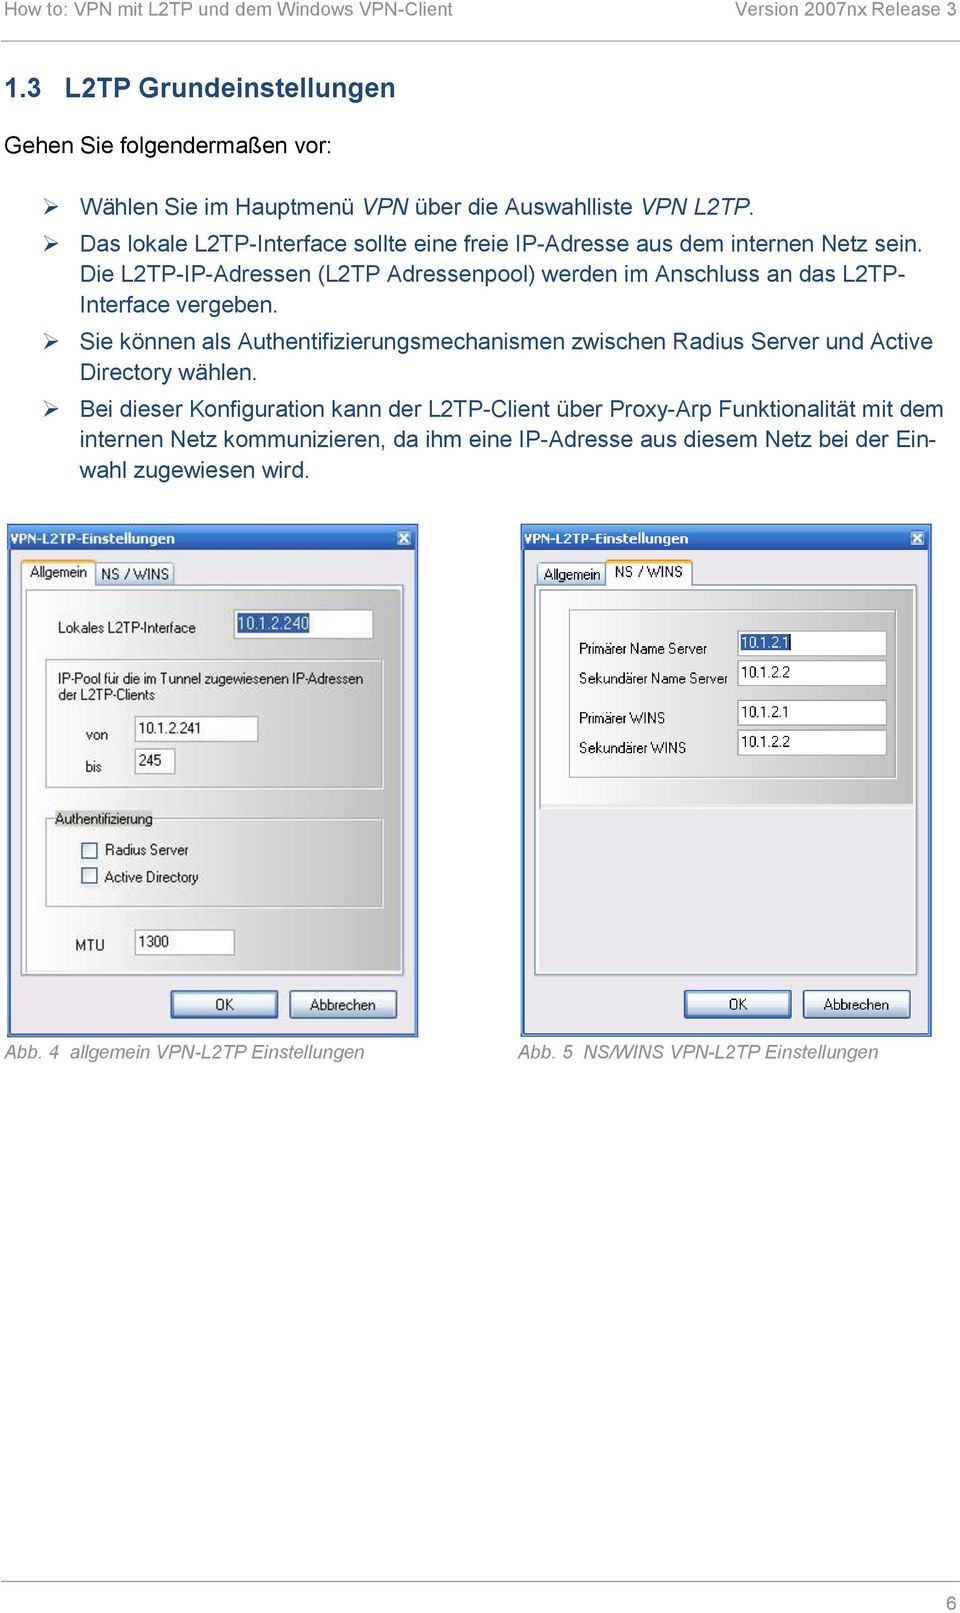 Die L2TP-IP-Adressen (L2TP Adressenpool) werden im Anschluss an das L2TP- Interface vergeben.